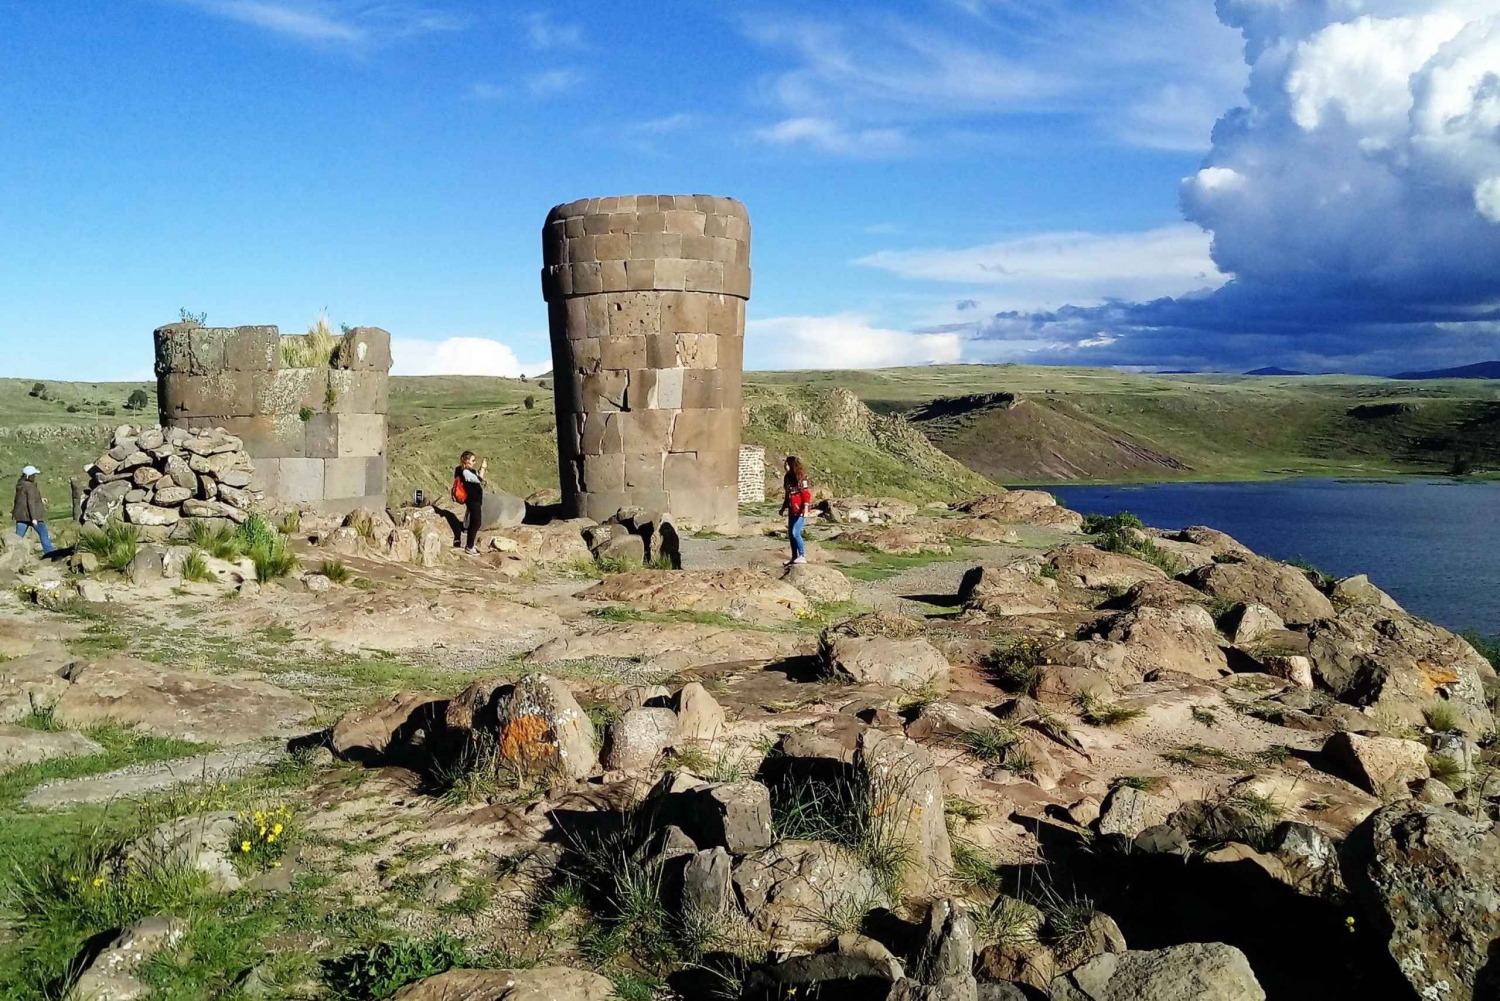 Von Puno: Sillustani-Gräber und touristischer Aussichtspunkt Puma